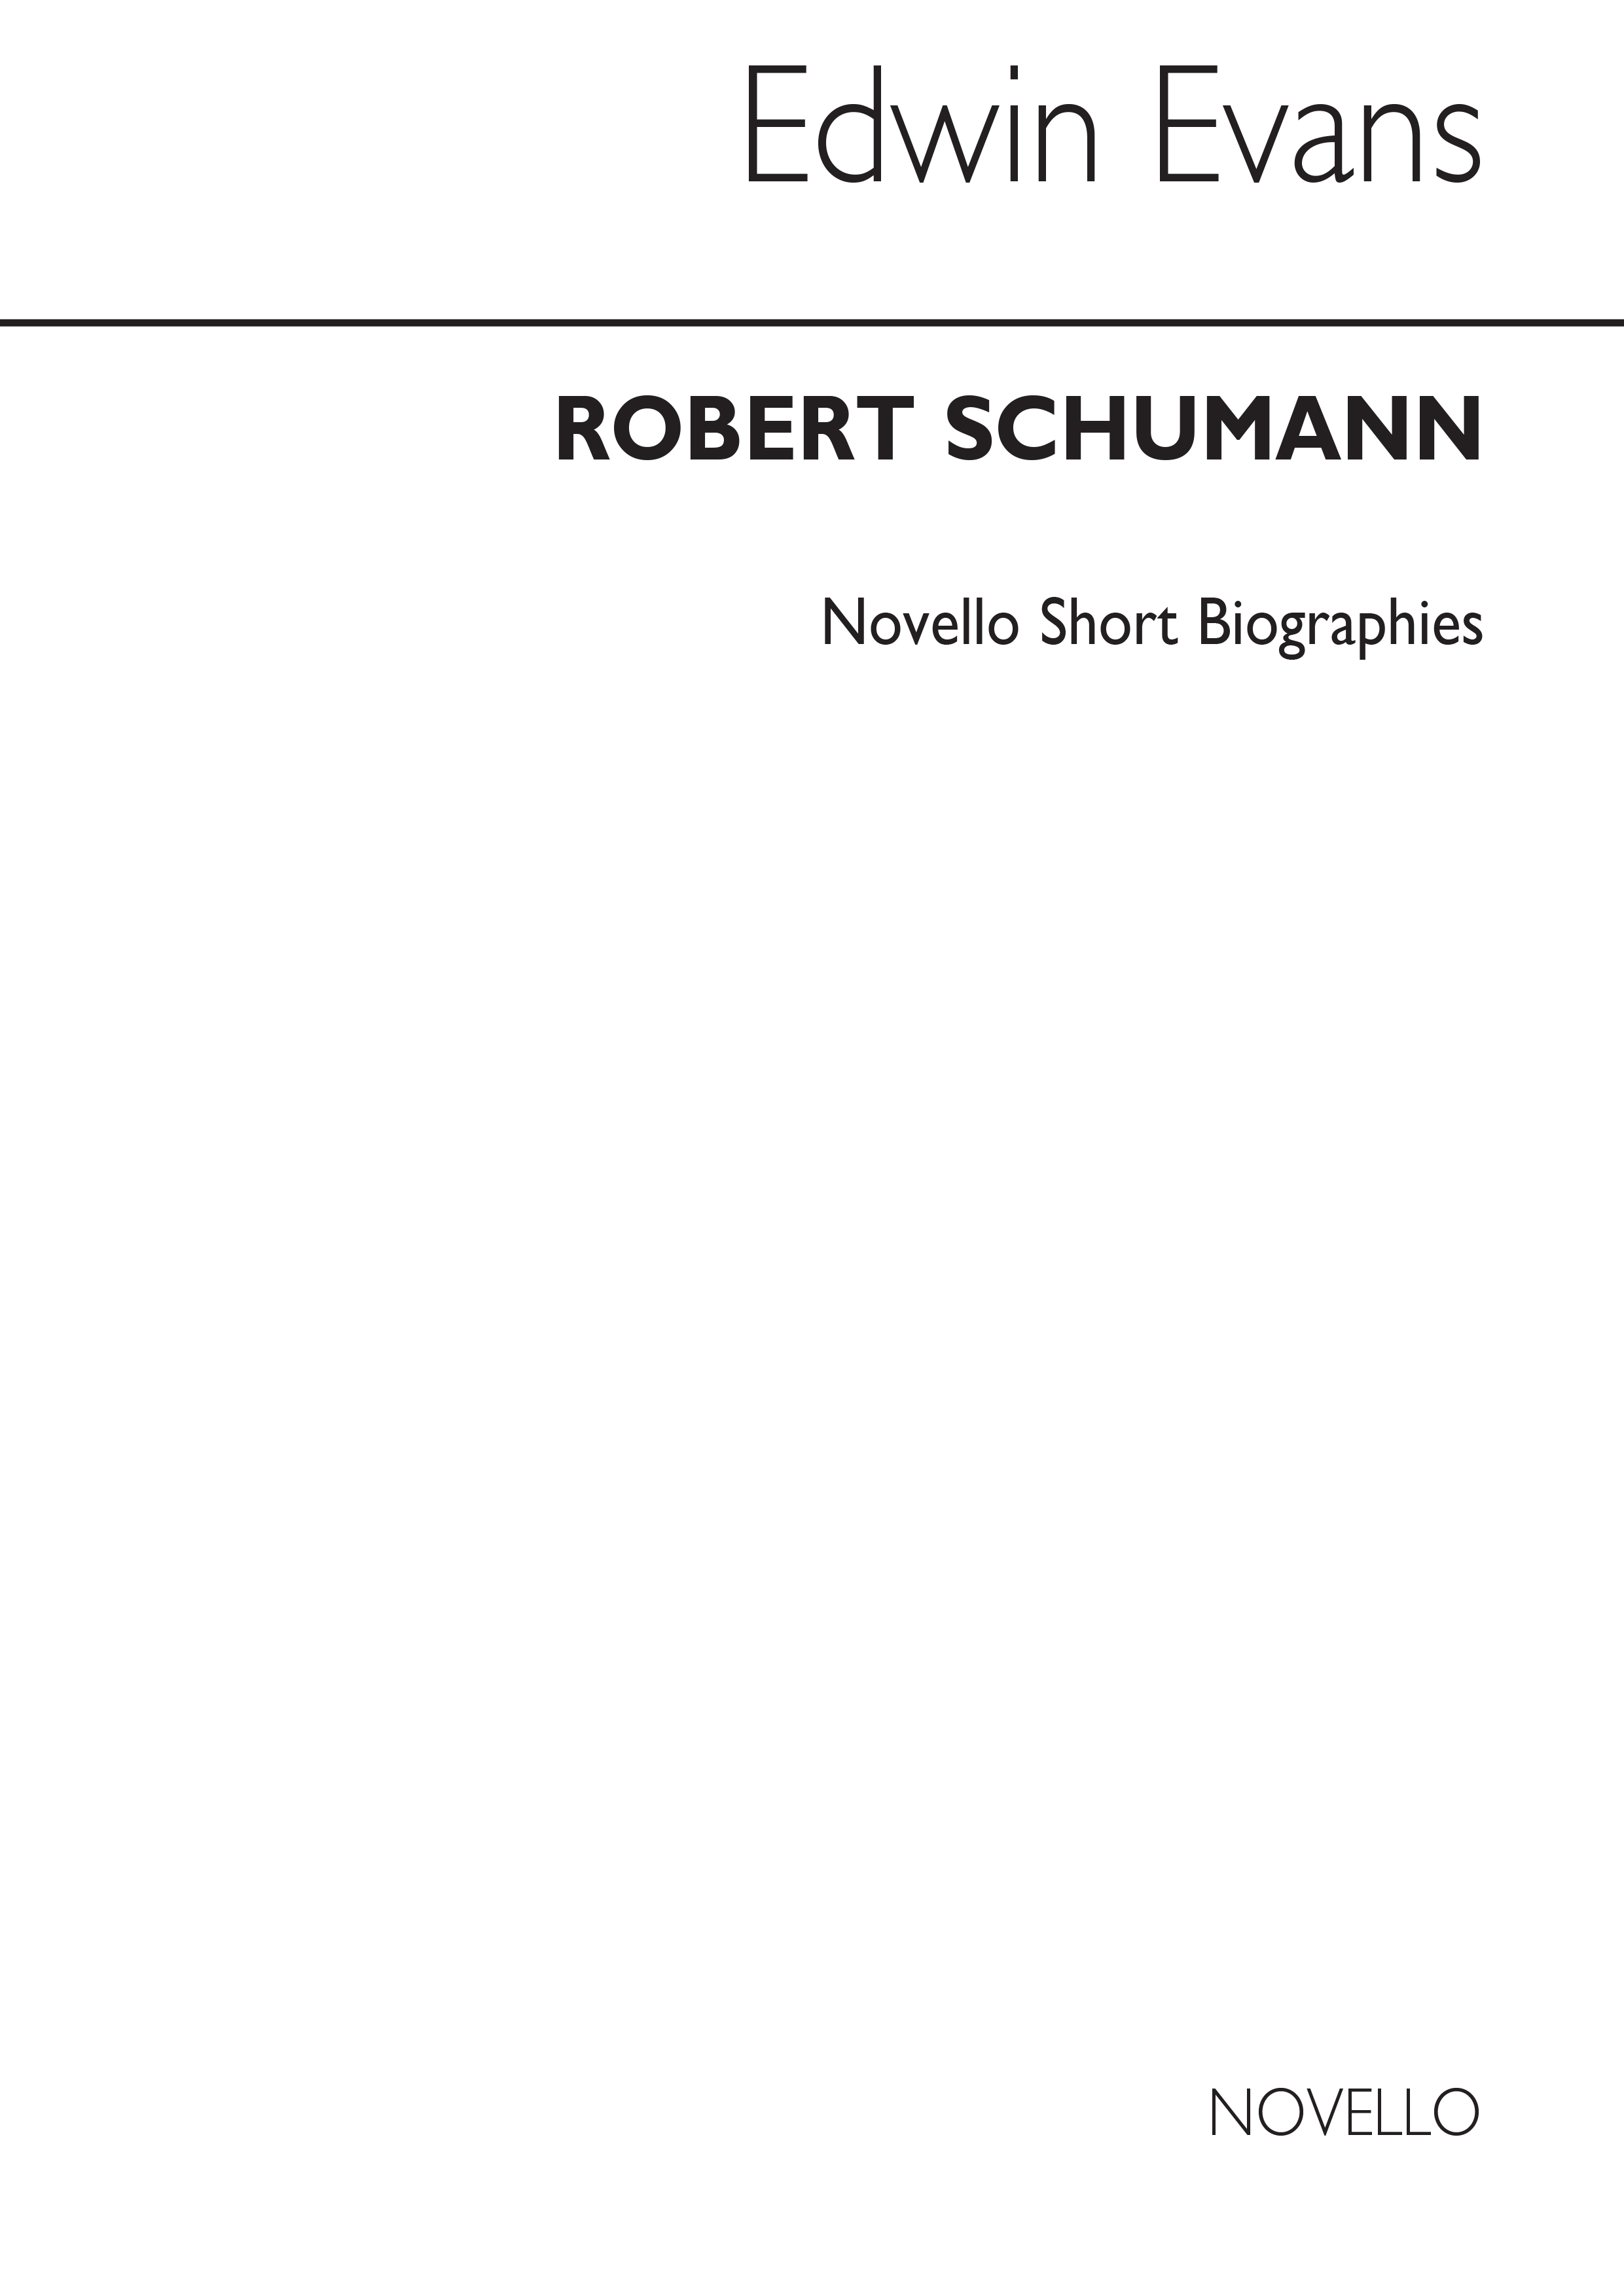 Robert Schumann: Schumann Biography (Evans)